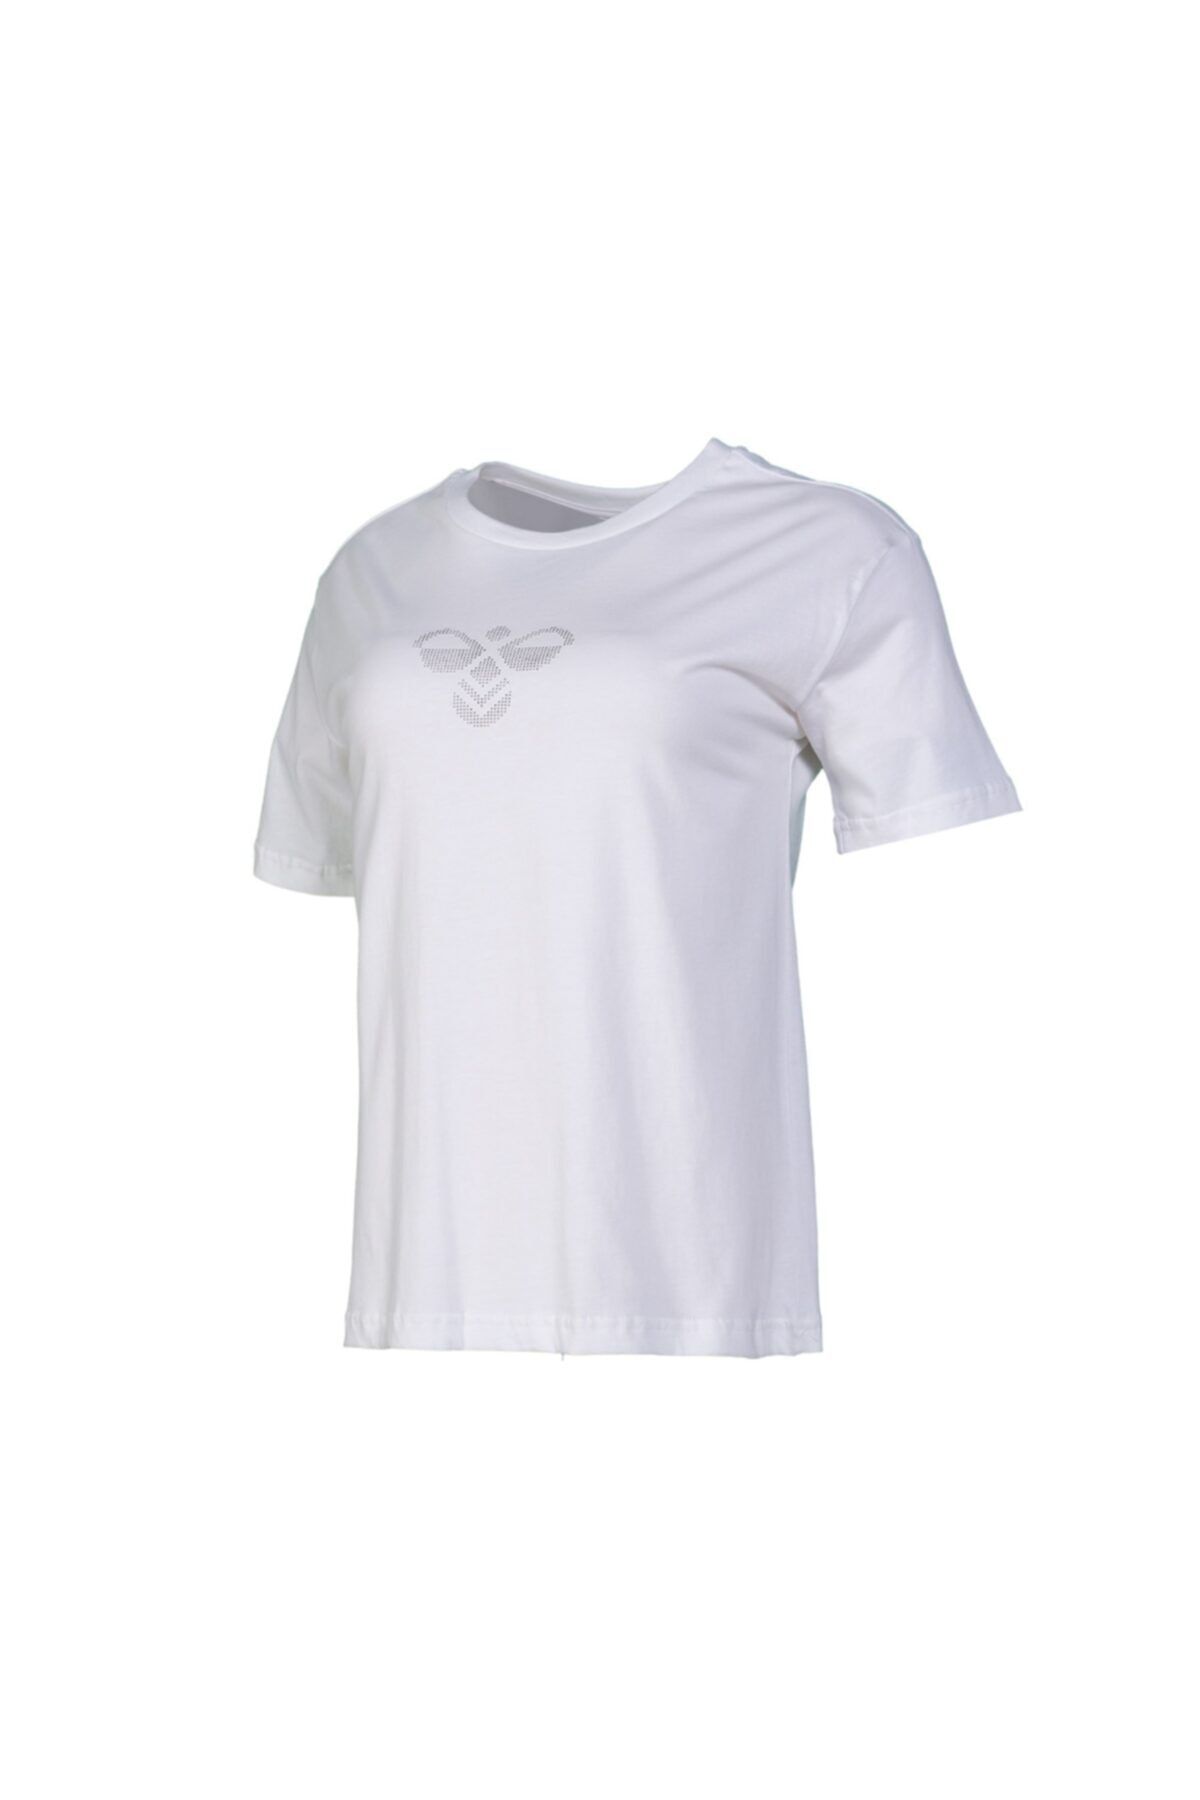 hummel Kadın Beyaz Jasmine S/s Tee T-shirt 911192-9973